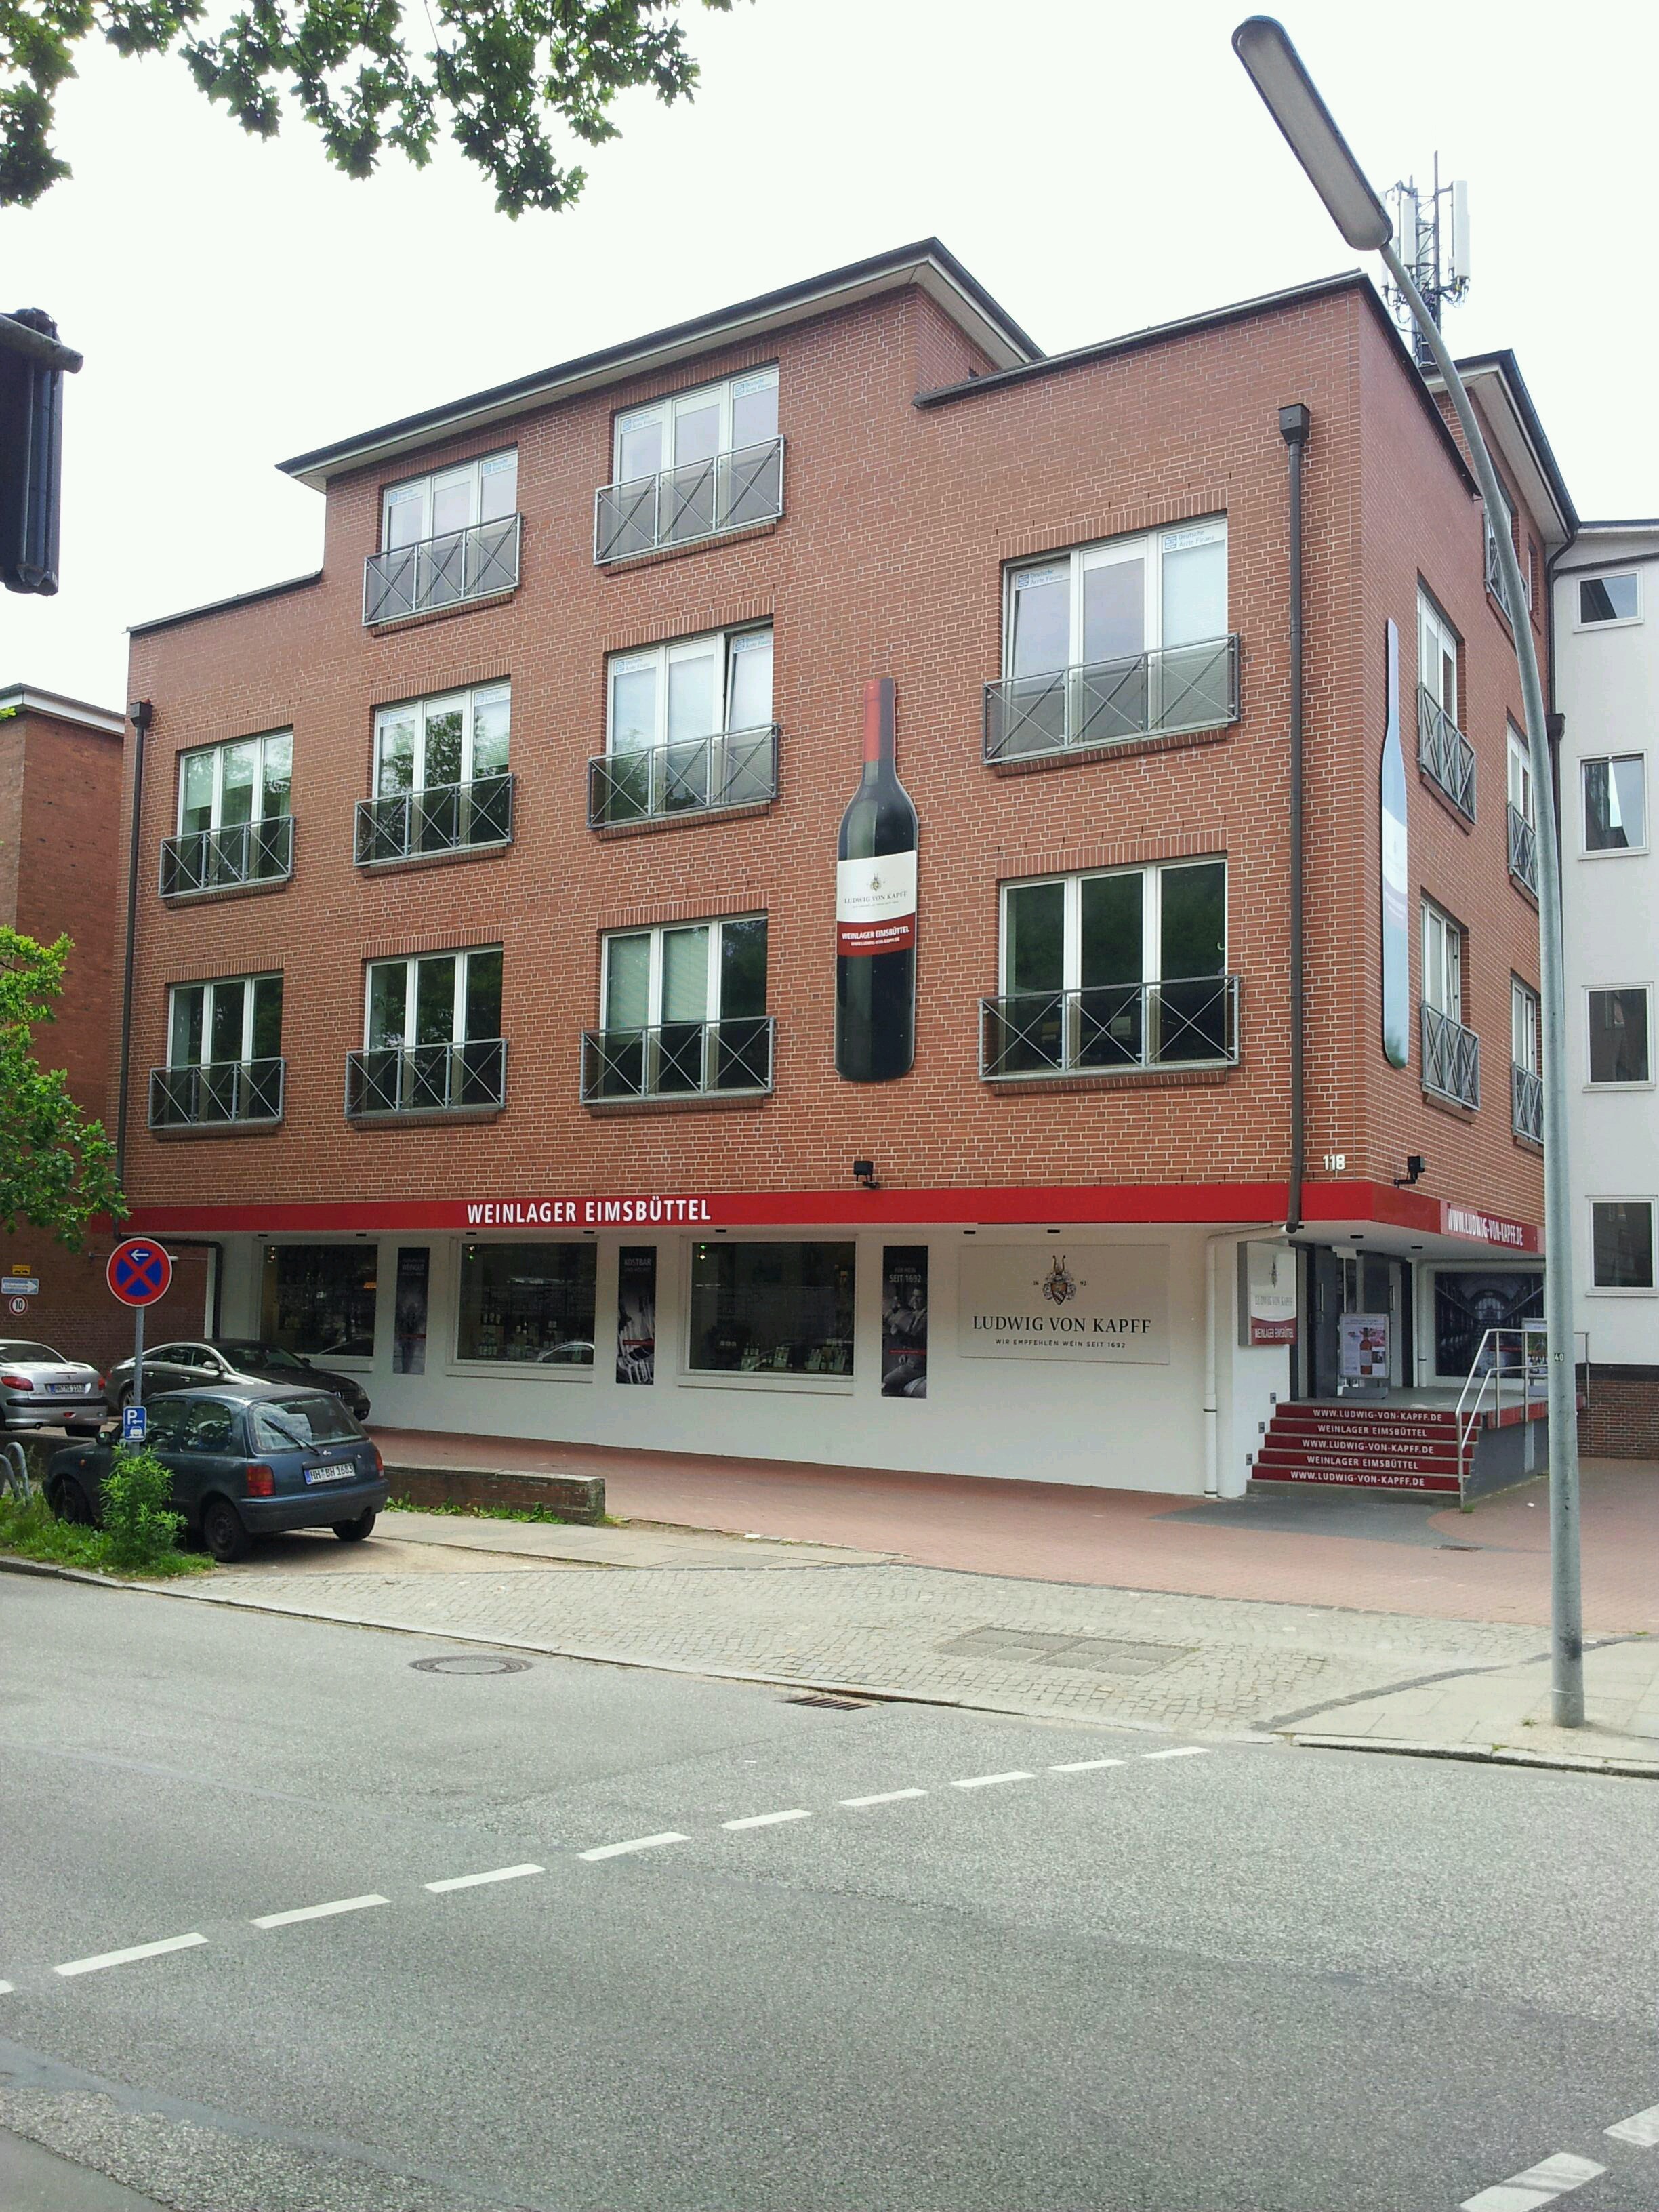 Bild 1 Weinlager Eimsbüttel in Hamburg